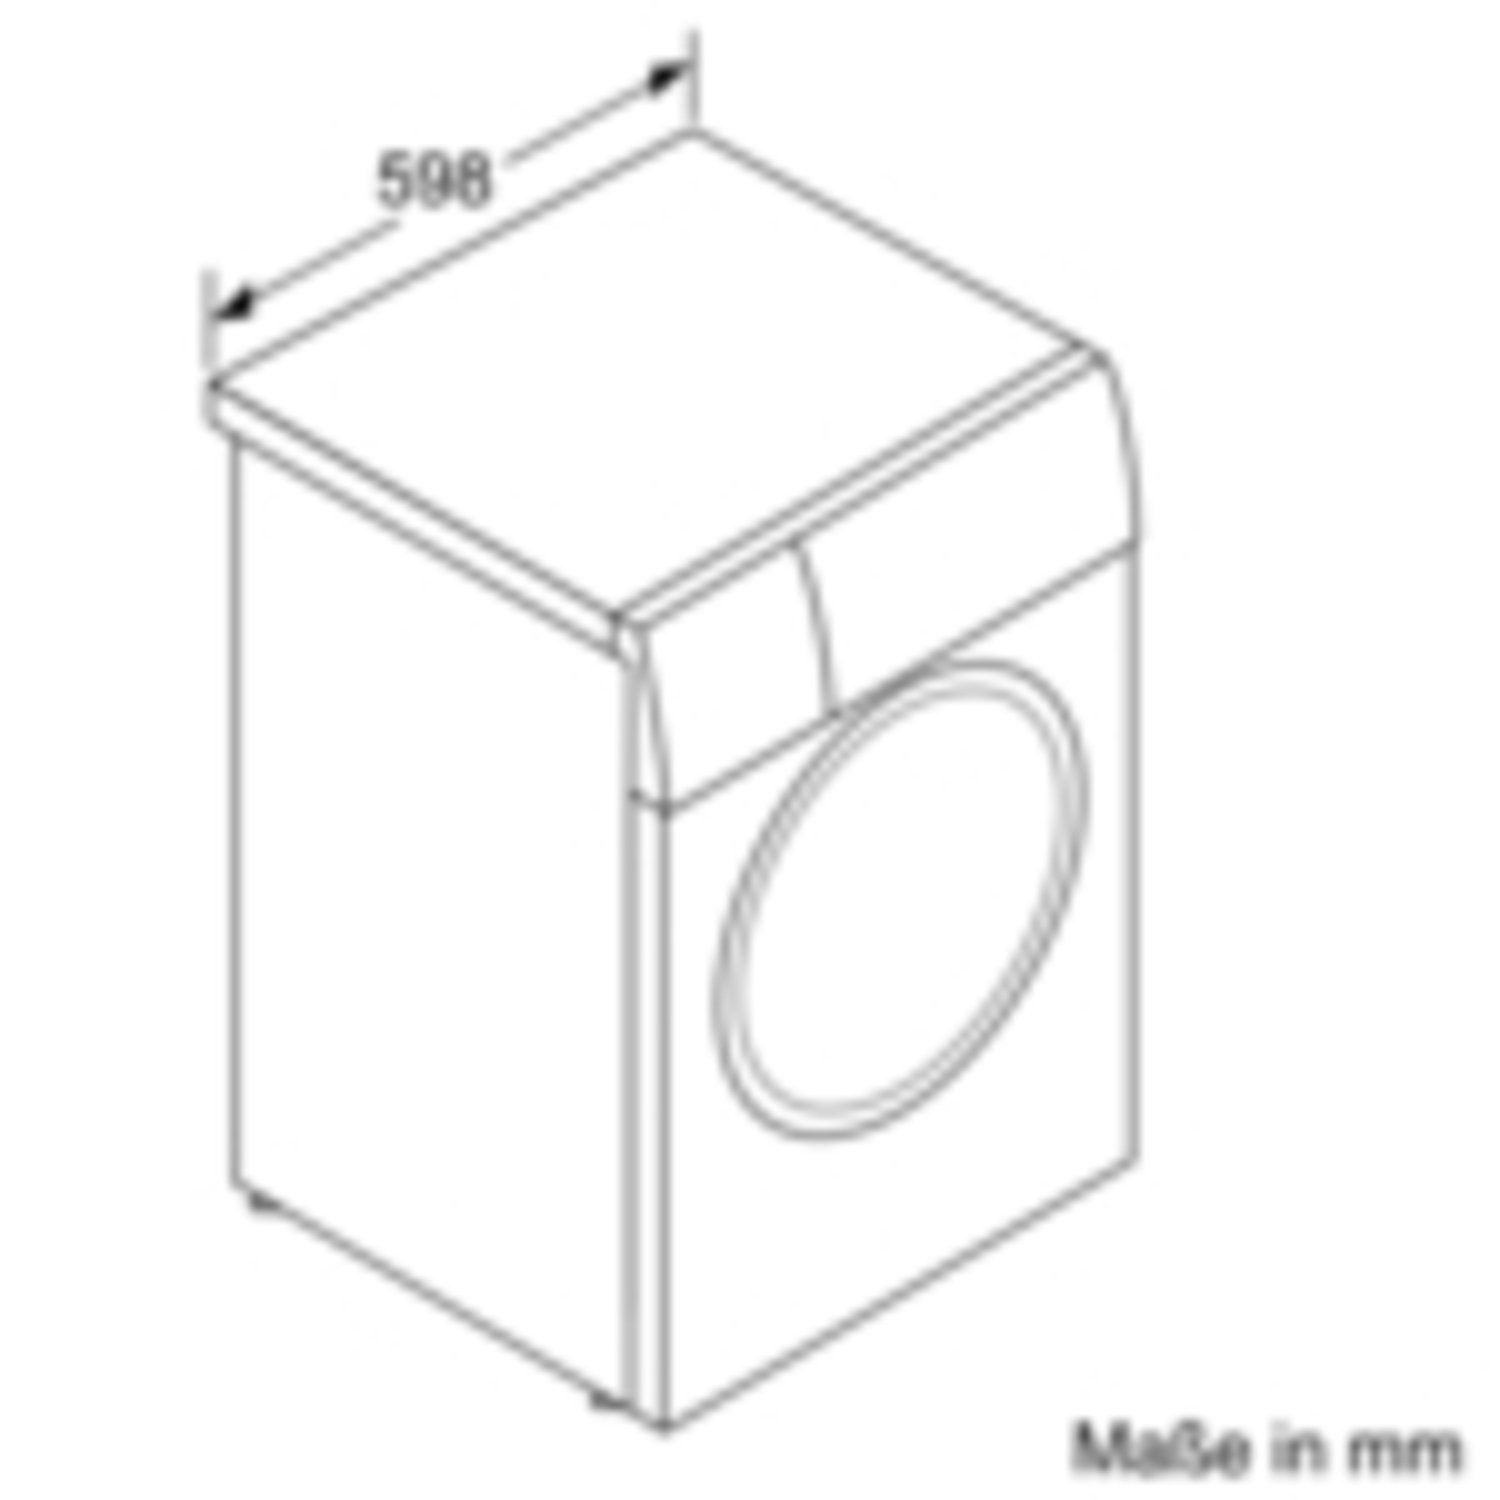 BOSCH REFURBISHED (*) Waschmaschine WGB254030 (10 1400 U/Min., A) kg